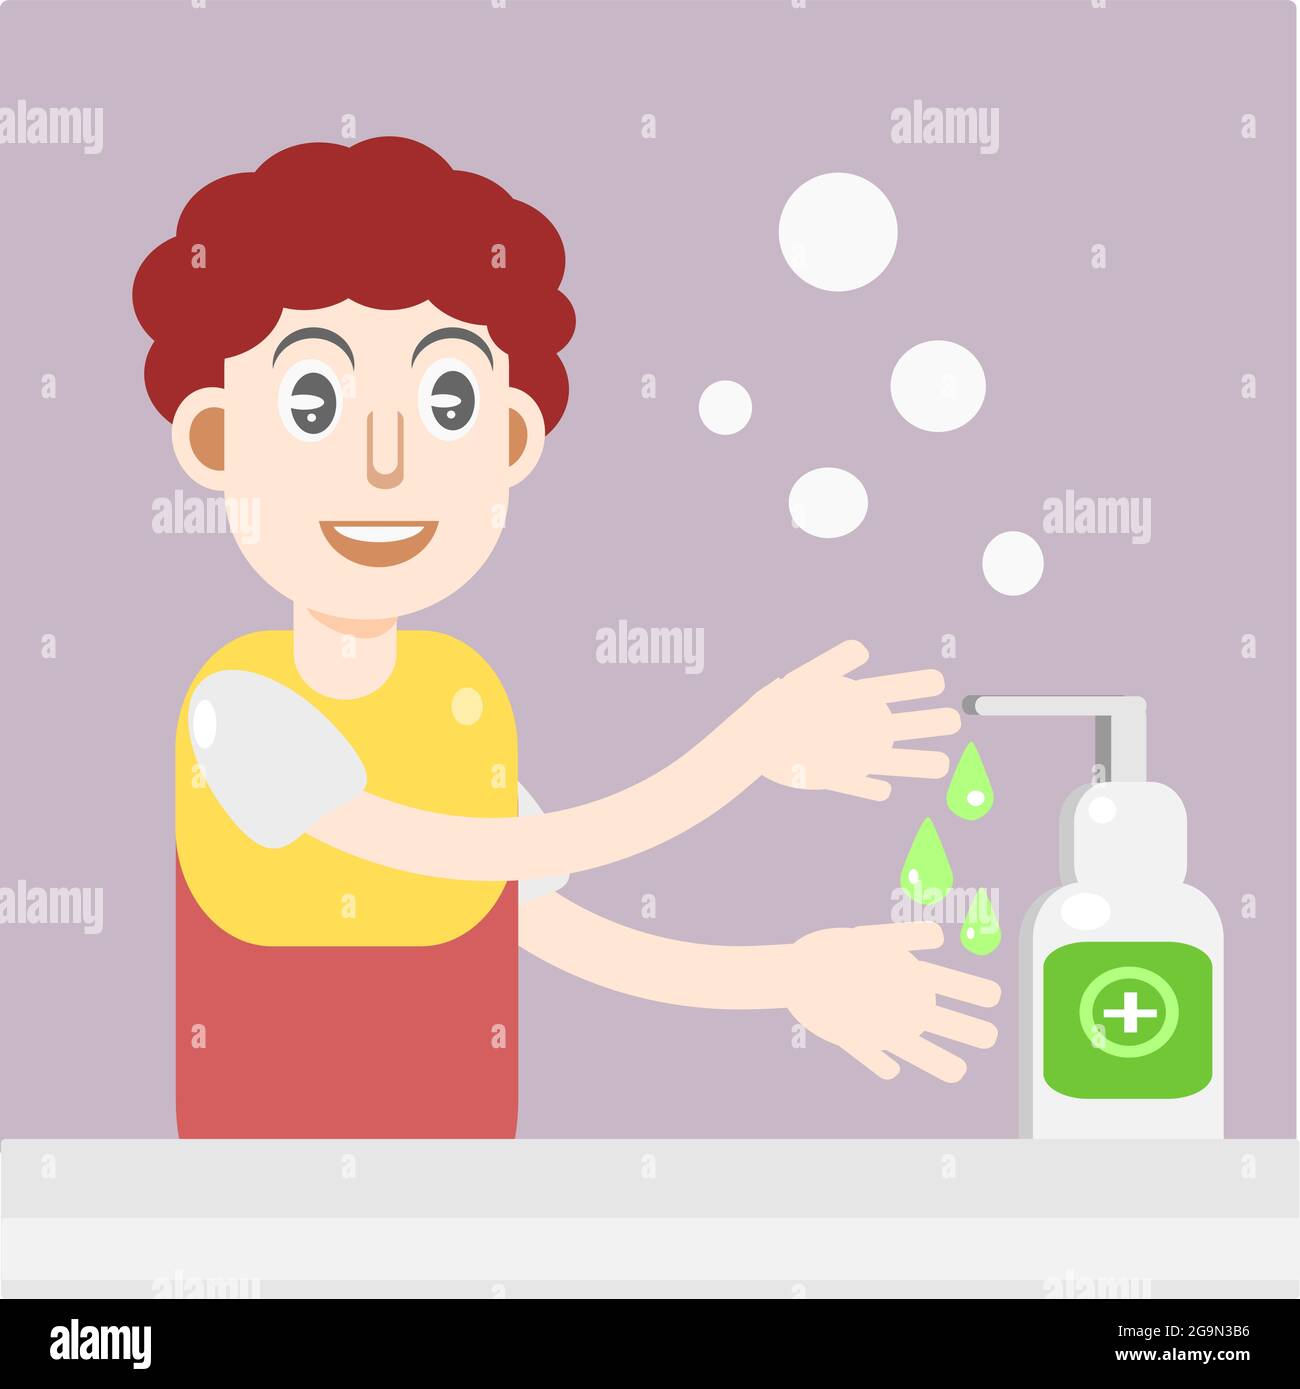 Immagine vettoriale di un disegno illustrativo di un bambino che sta lavando le sue mani con sapone come uno sforzo per vivere una vita pulita e sana Illustrazione Vettoriale